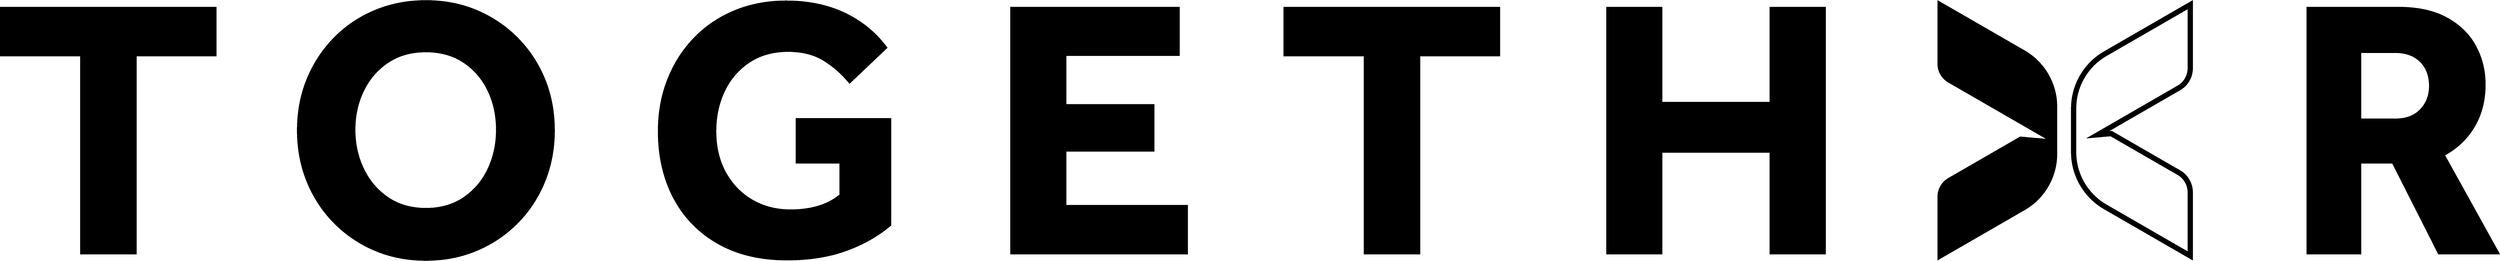 togethxr-logo-black-rgb.png